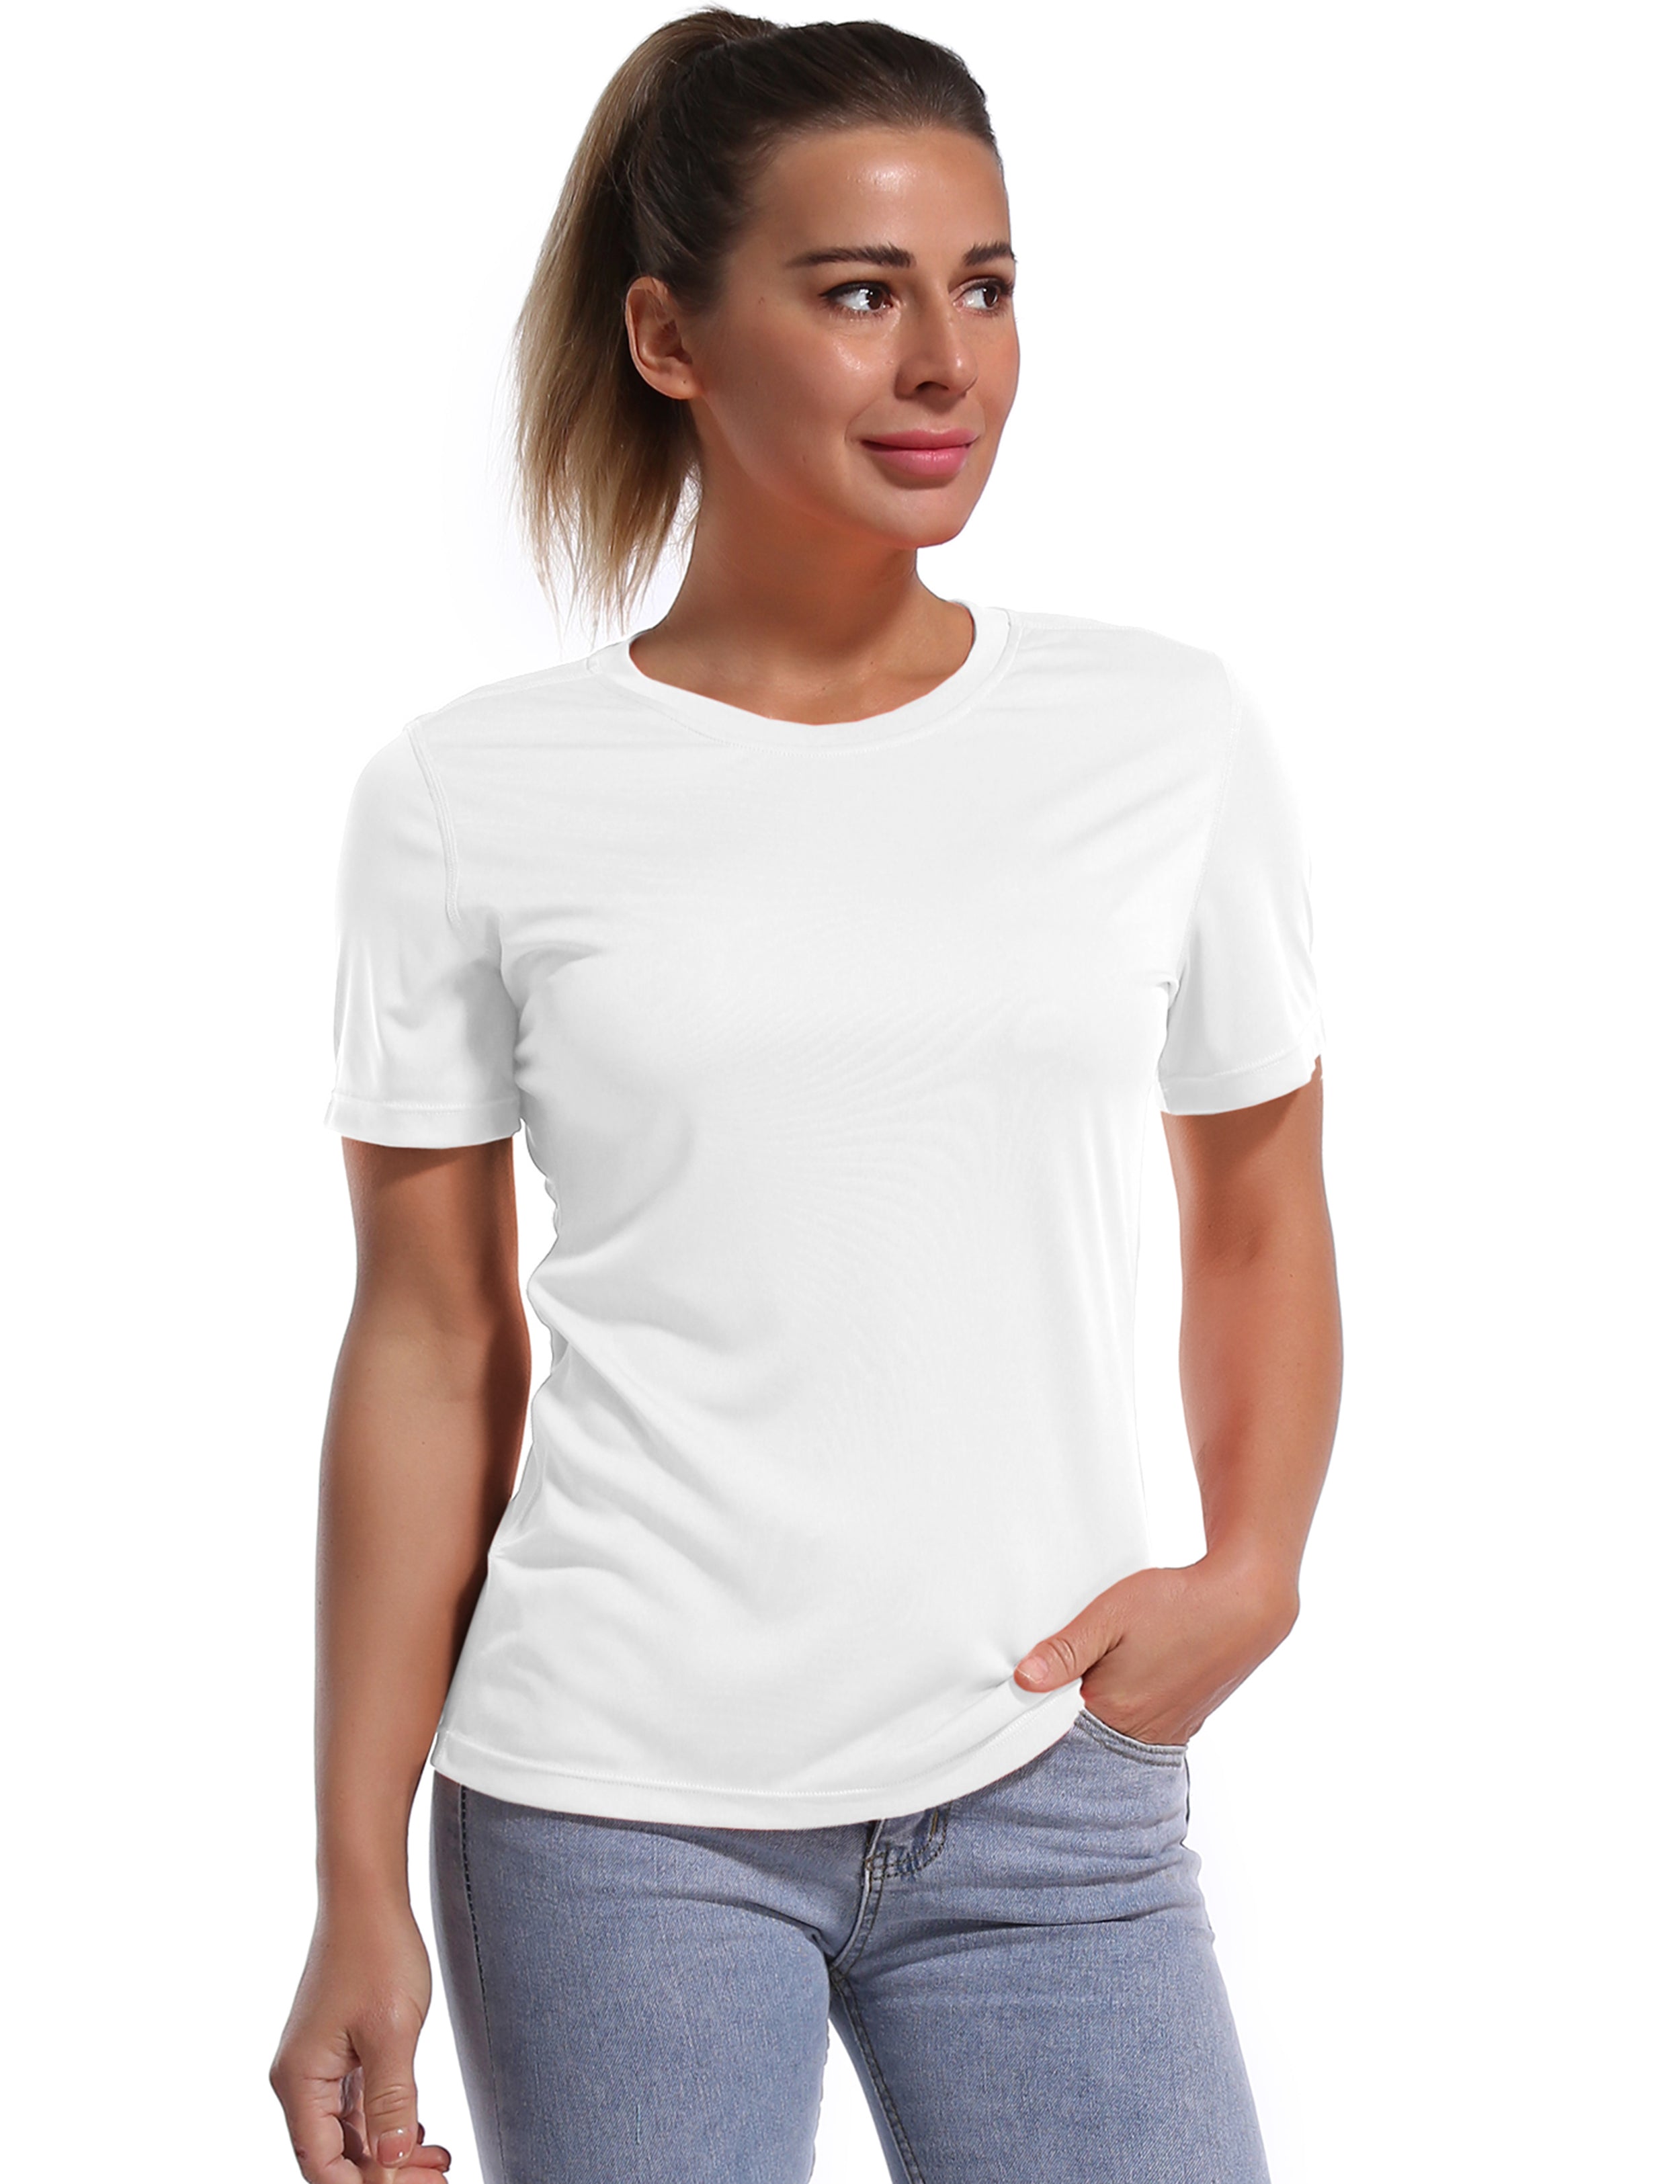 Short Sleeve Athletic Shirts white_Jogging